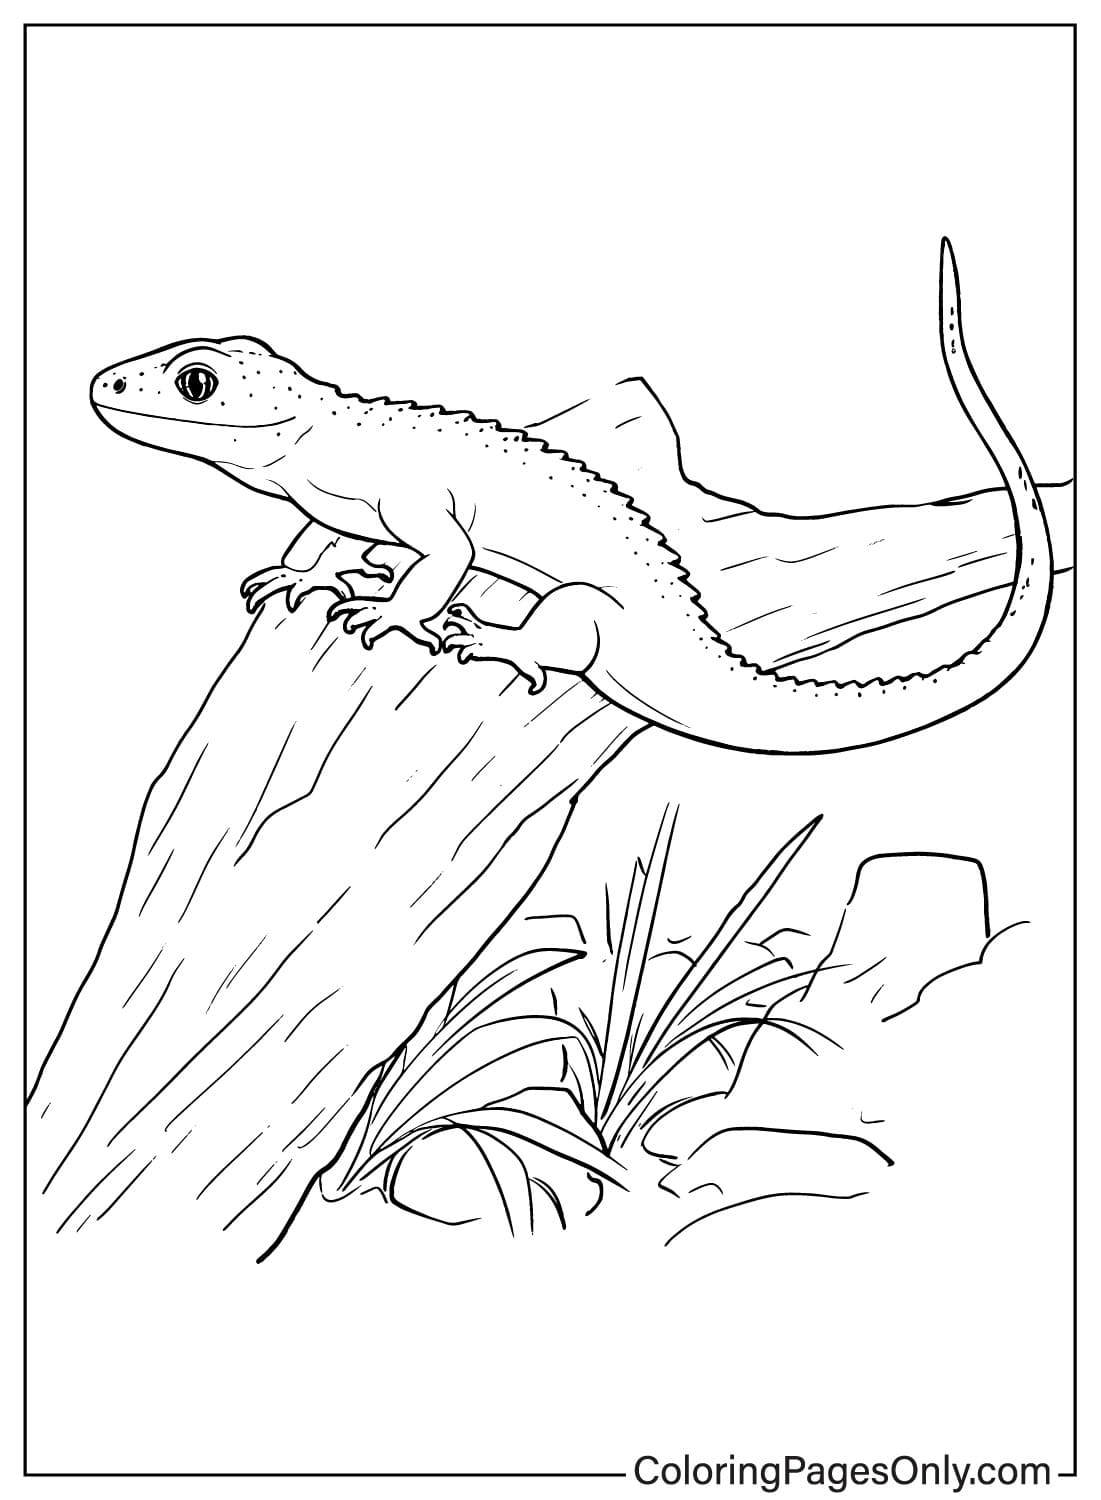 Página para colorir de lagarto para impressão gratuita da Lizard